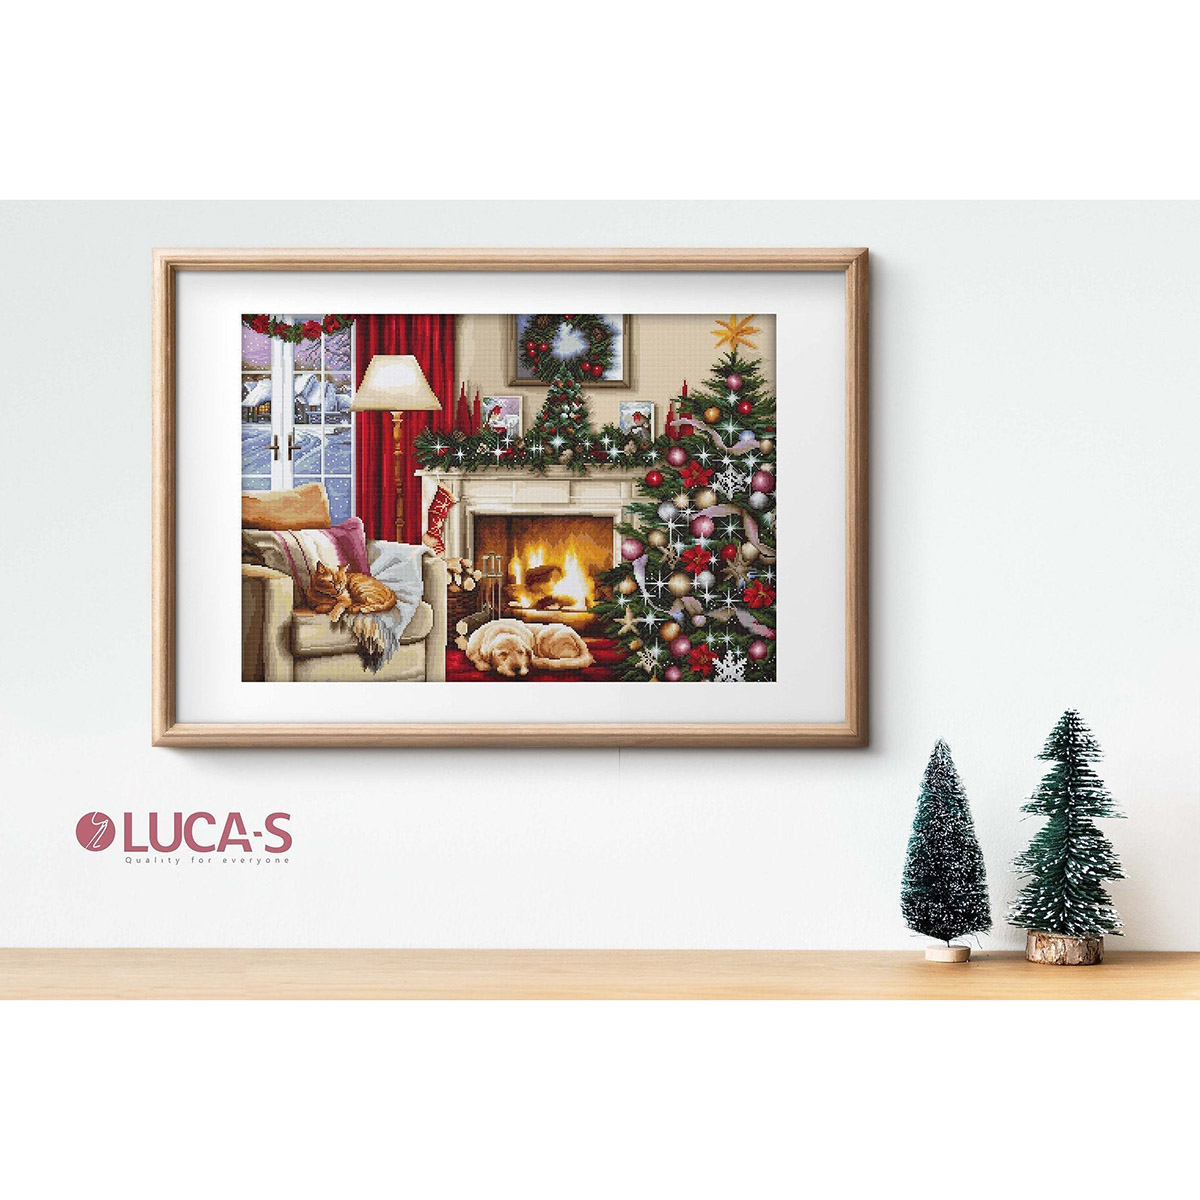 Набор для вышивания Luca-S крестом B591 Рождественский интерьер 48.5х34см - фото 2